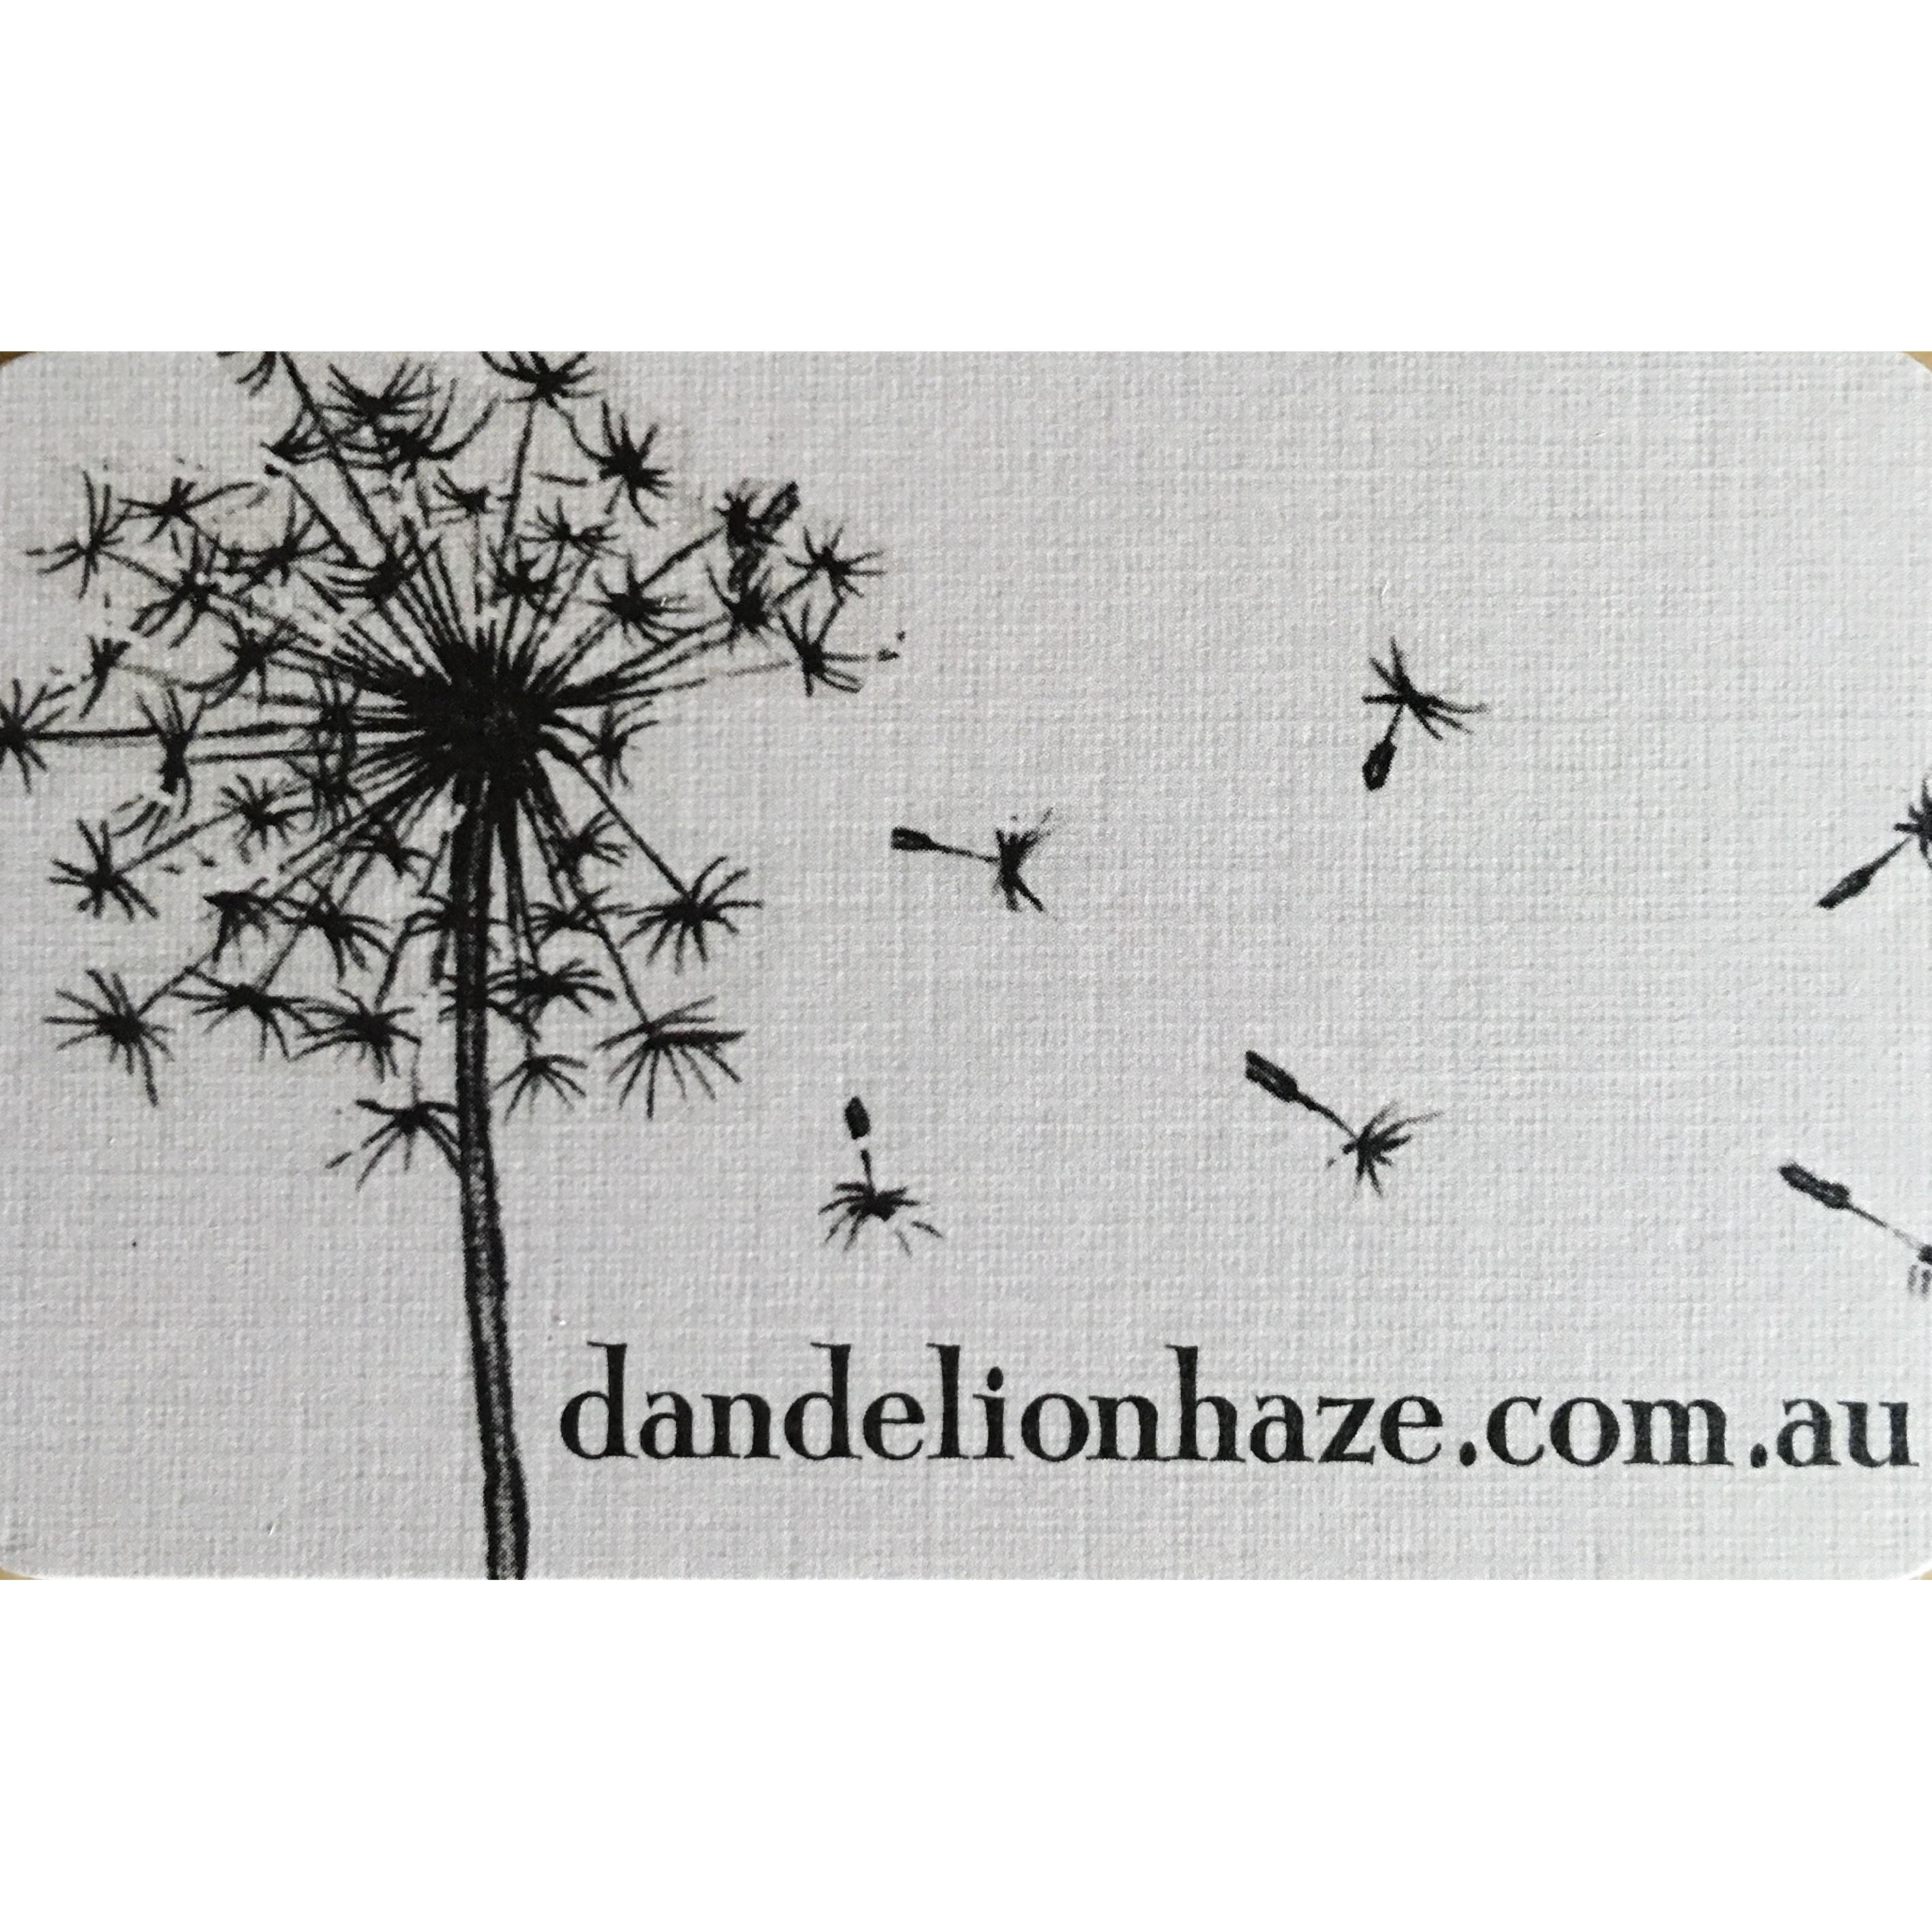 Dandelion Haze Logo